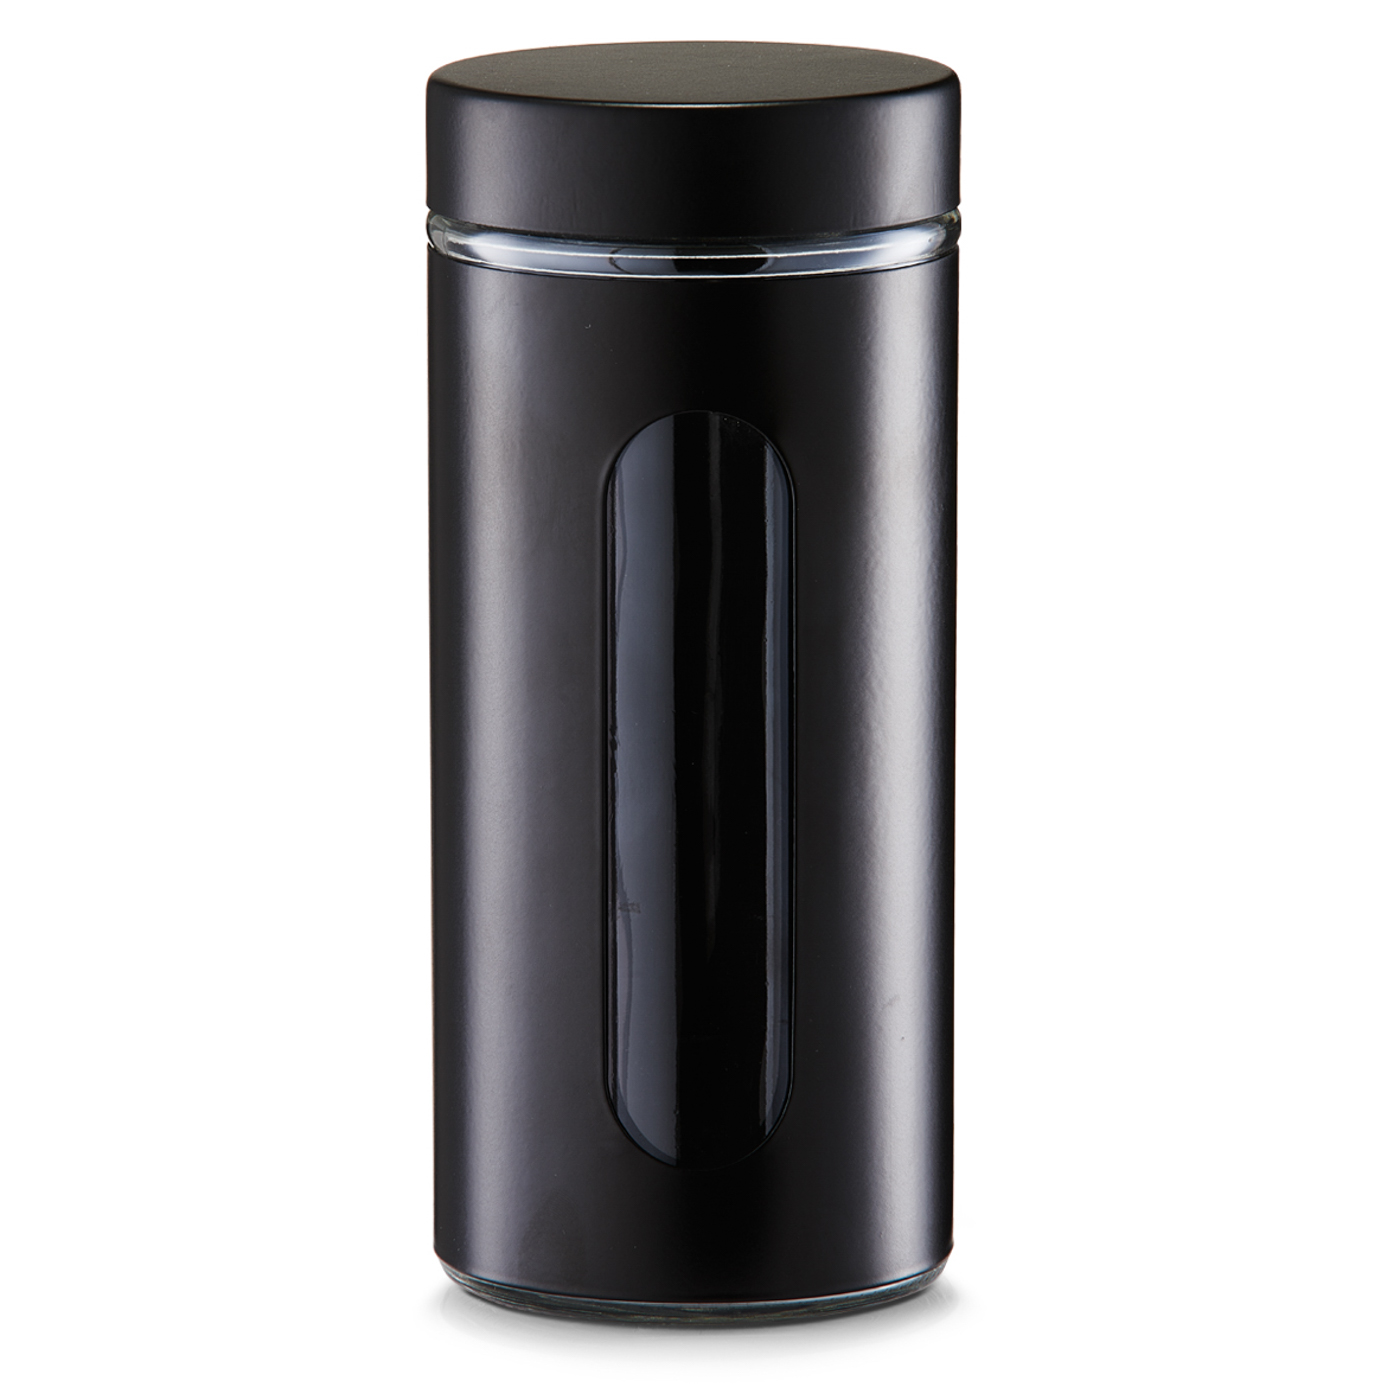 Zeller Vorratsdose EBONY, Inhalt: 1,2 Liter, Material: Glas mit schwarzer Metall-Ummantelung, Sichtfenster,Höhe: 23 cm,